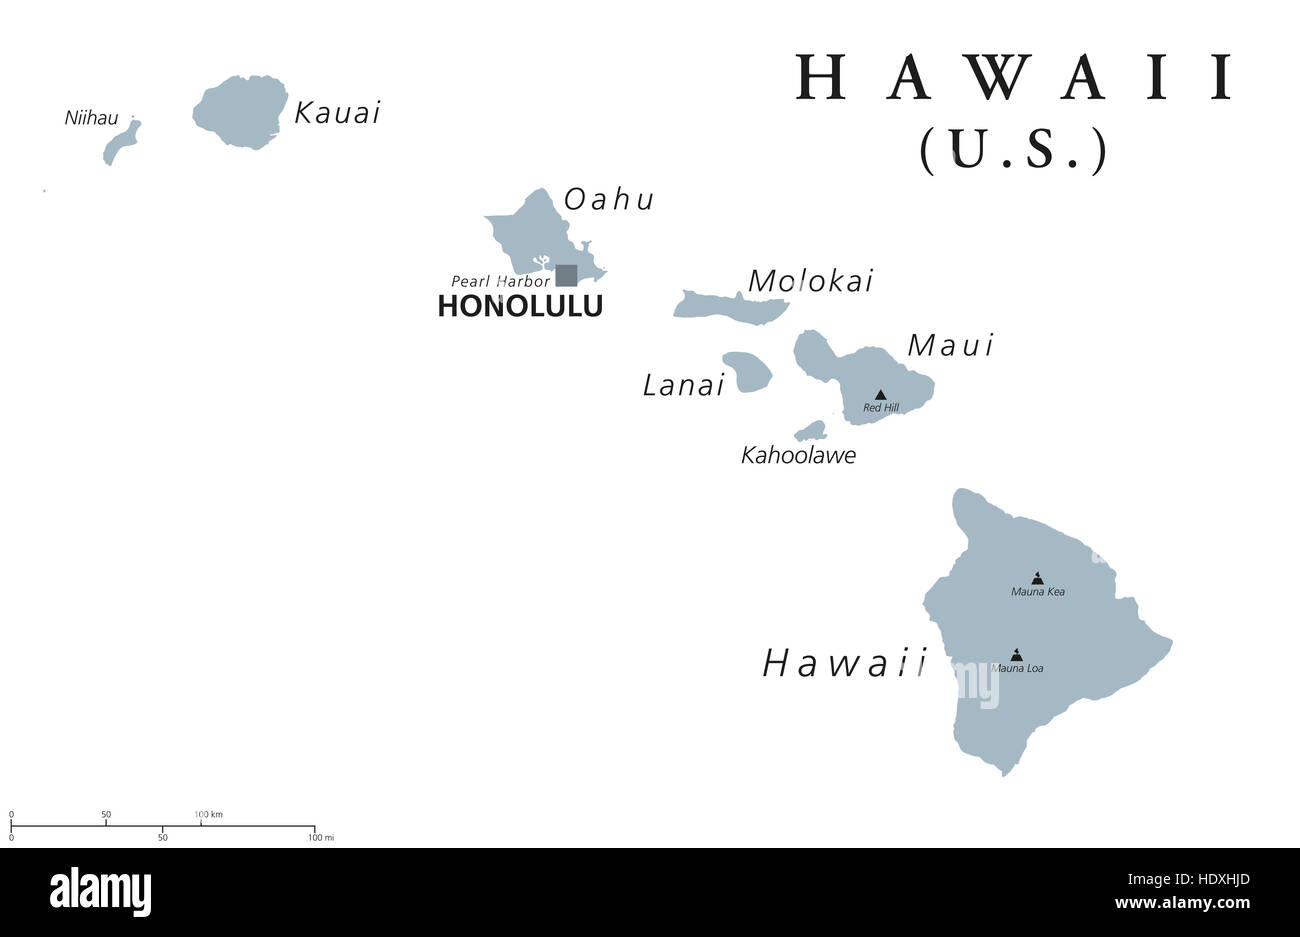 Hawaii mappa politico con capitale Honolulu. Stato dell'USA, trova in Oceania, interamente composto di isole. Foto Stock